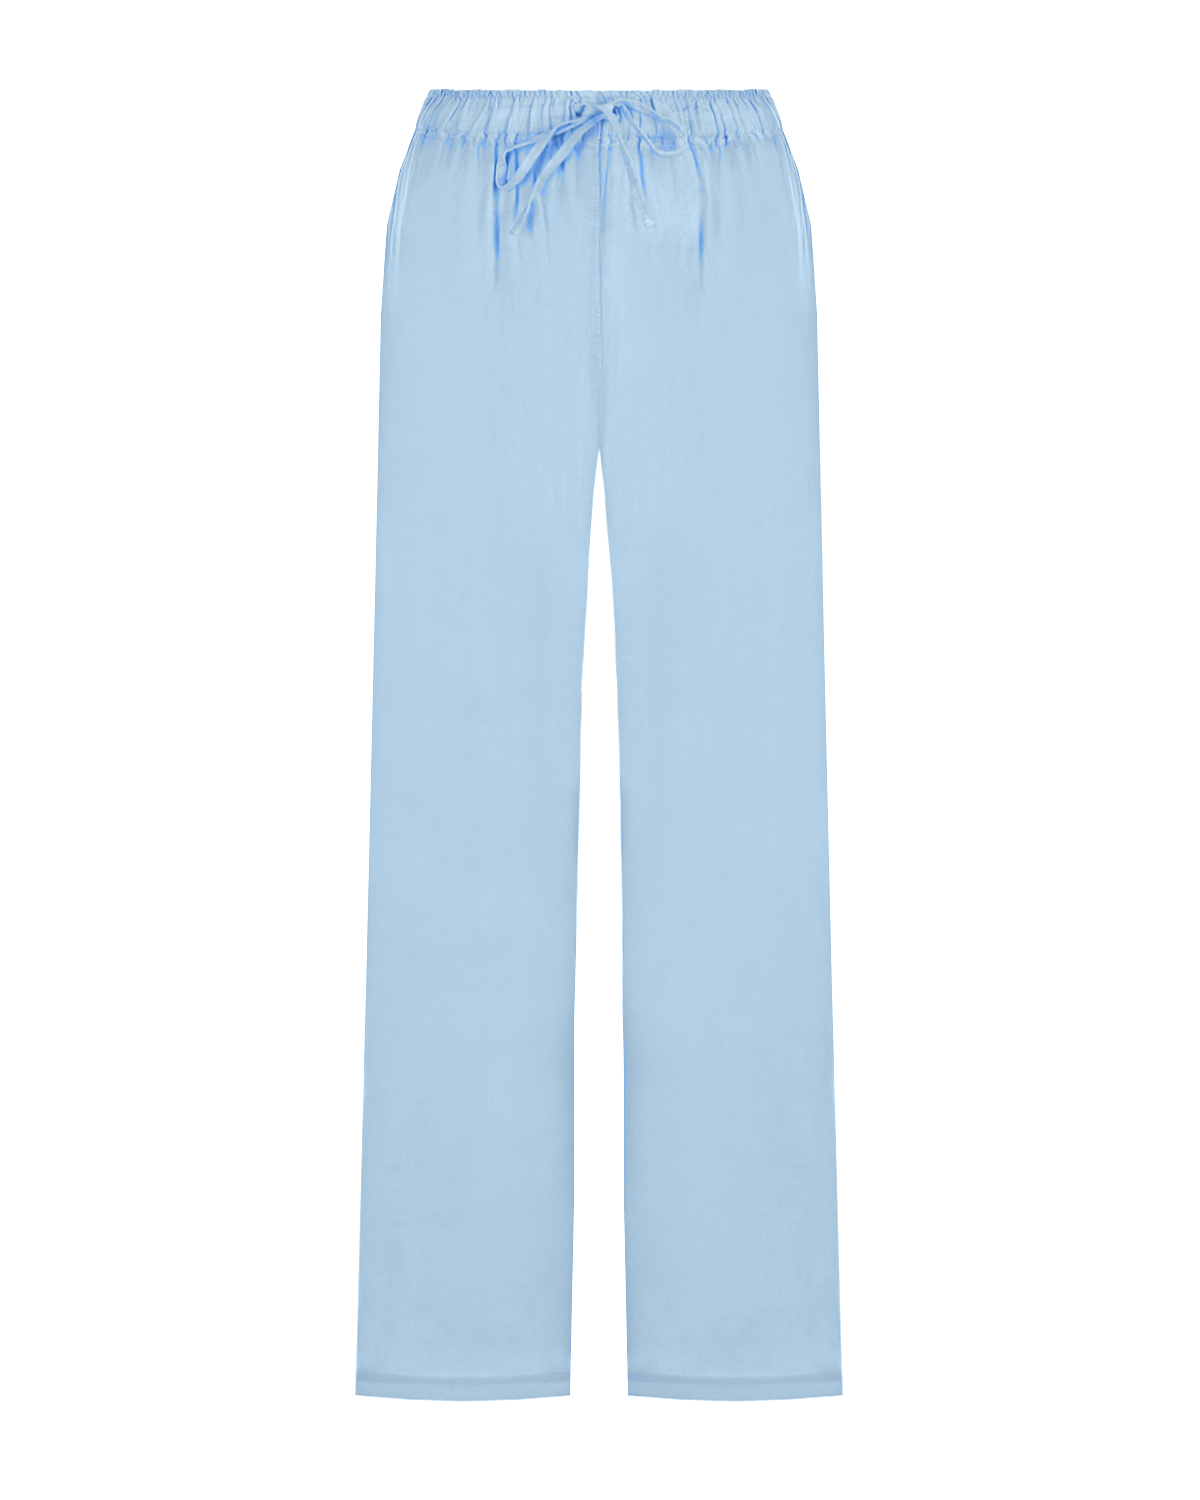 Голубые брюки с поясом на кулиске 120% Lino, размер 40, цвет голубой - фото 1